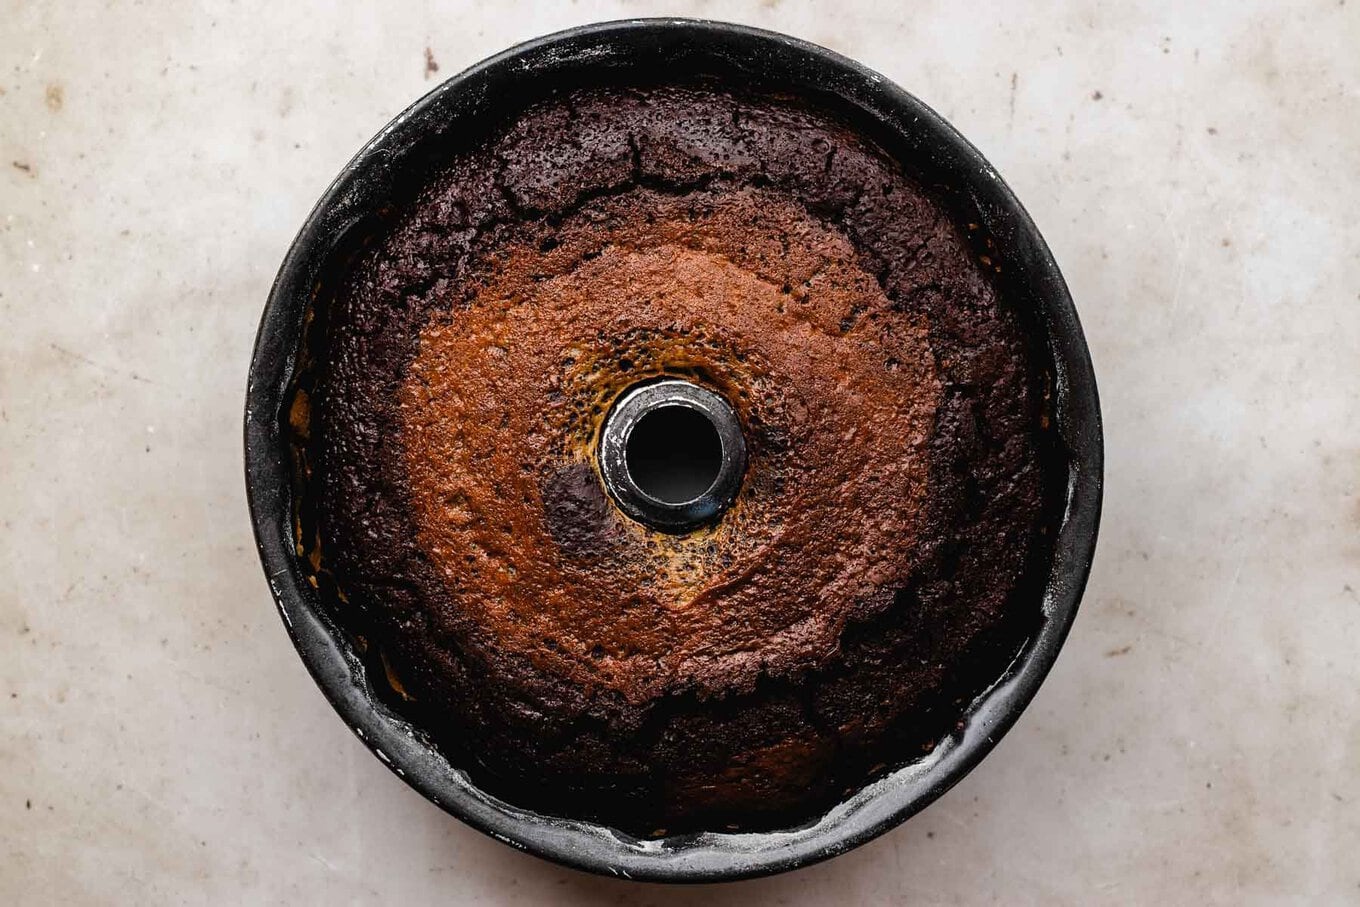 Chocoflan baked in Bundt pan before flipping, horizontal photo